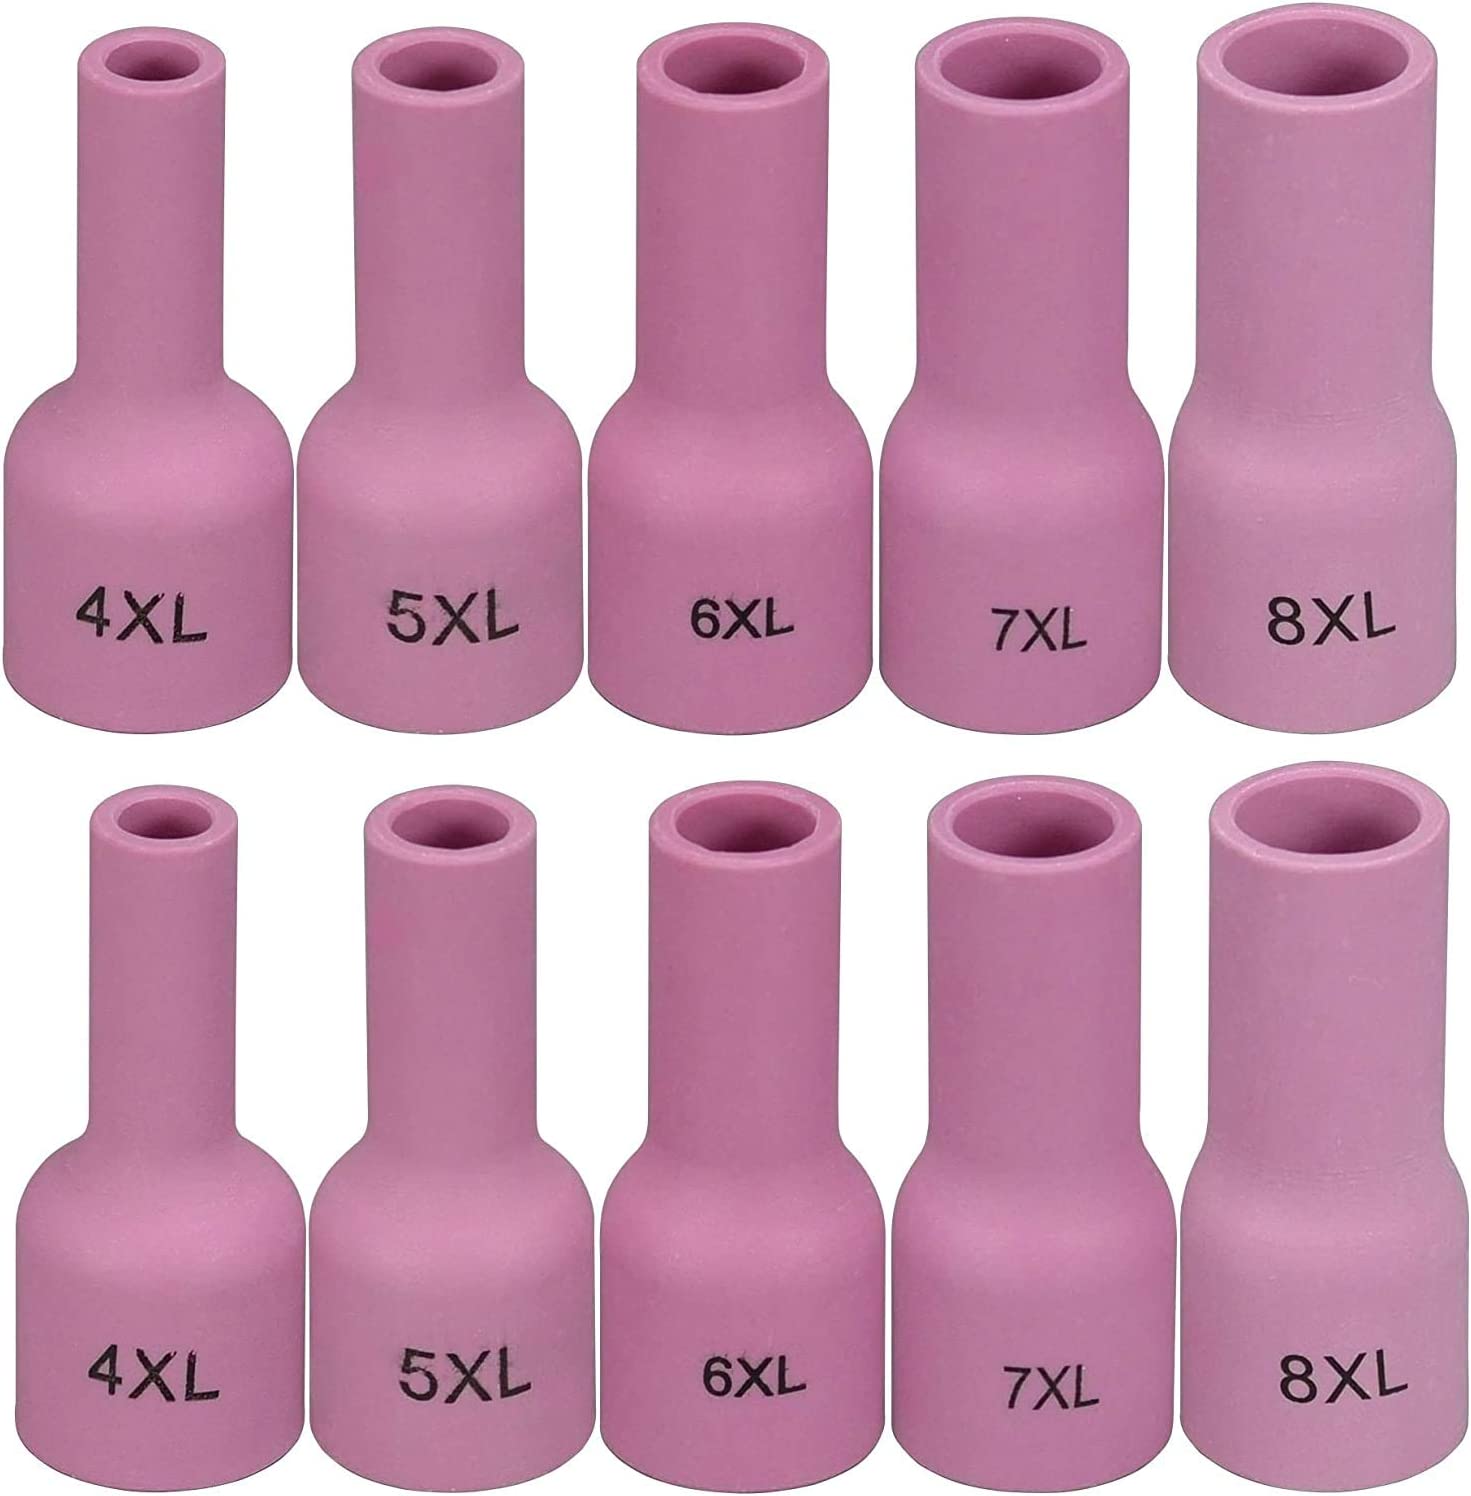 TIG Gas Lens Ceramic Cup Extra Long Kit 53N58XL (#4XL 1/4") 53N59XL (#5XL 5/16") 53N60XL (#6XL 3/8") 53N61XL (#7XL 7/16") 53N61SXL (#8XL 1/2") for SR WP 9 20 25 TIG Welding Torch 10pcs 